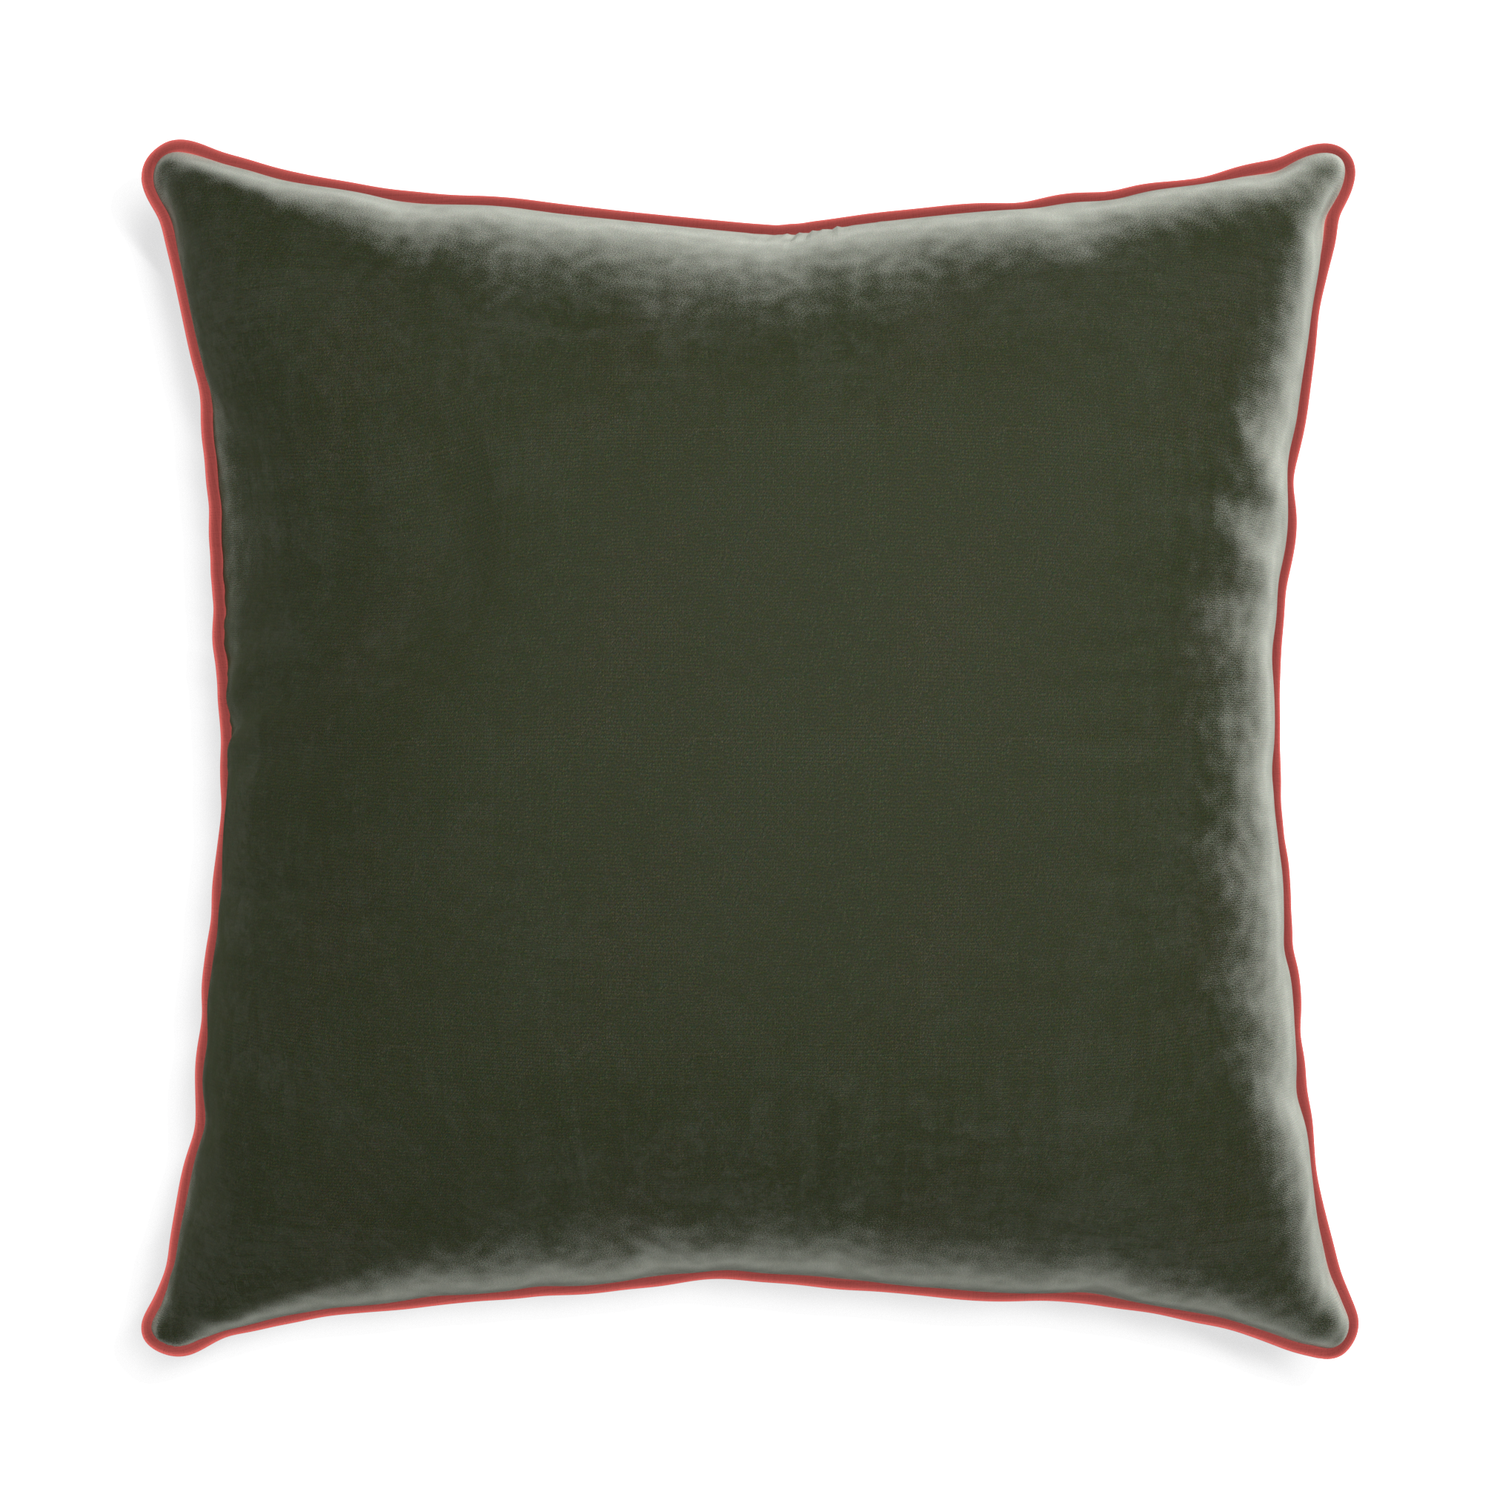 Euro-sham fern velvet custom pillow with c piping on white background